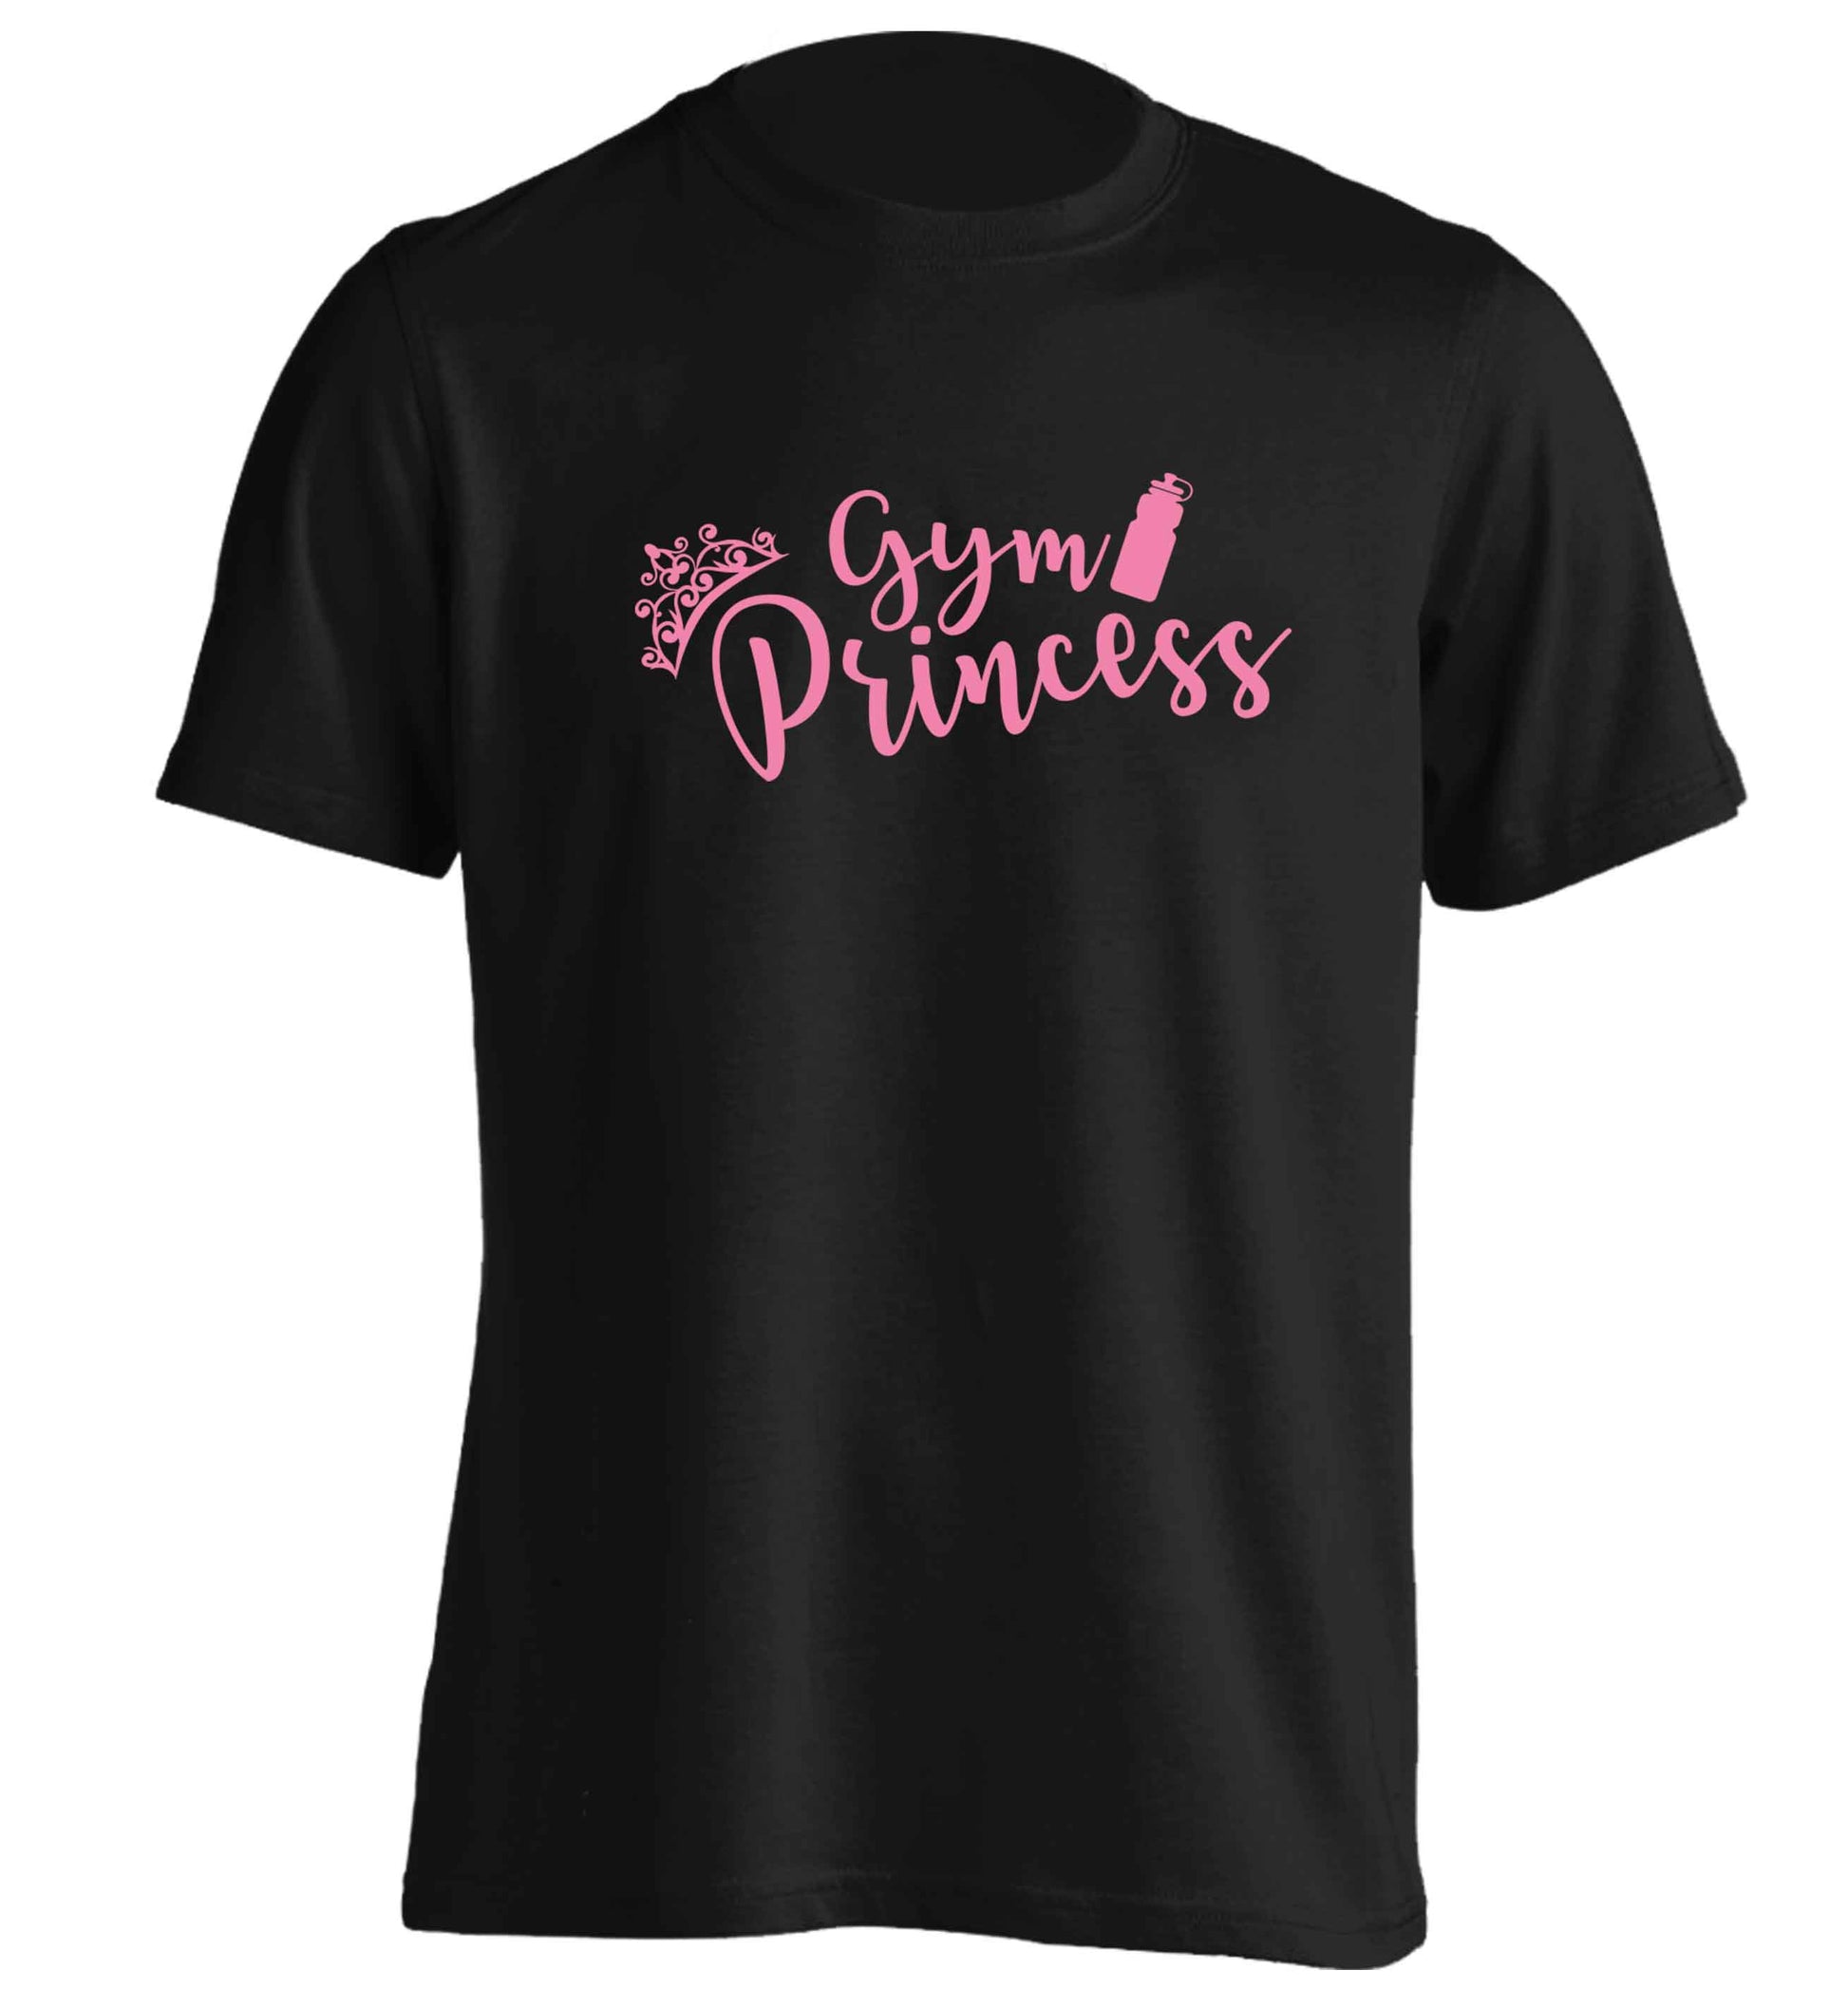 Gym princess adults unisex black Tshirt 2XL